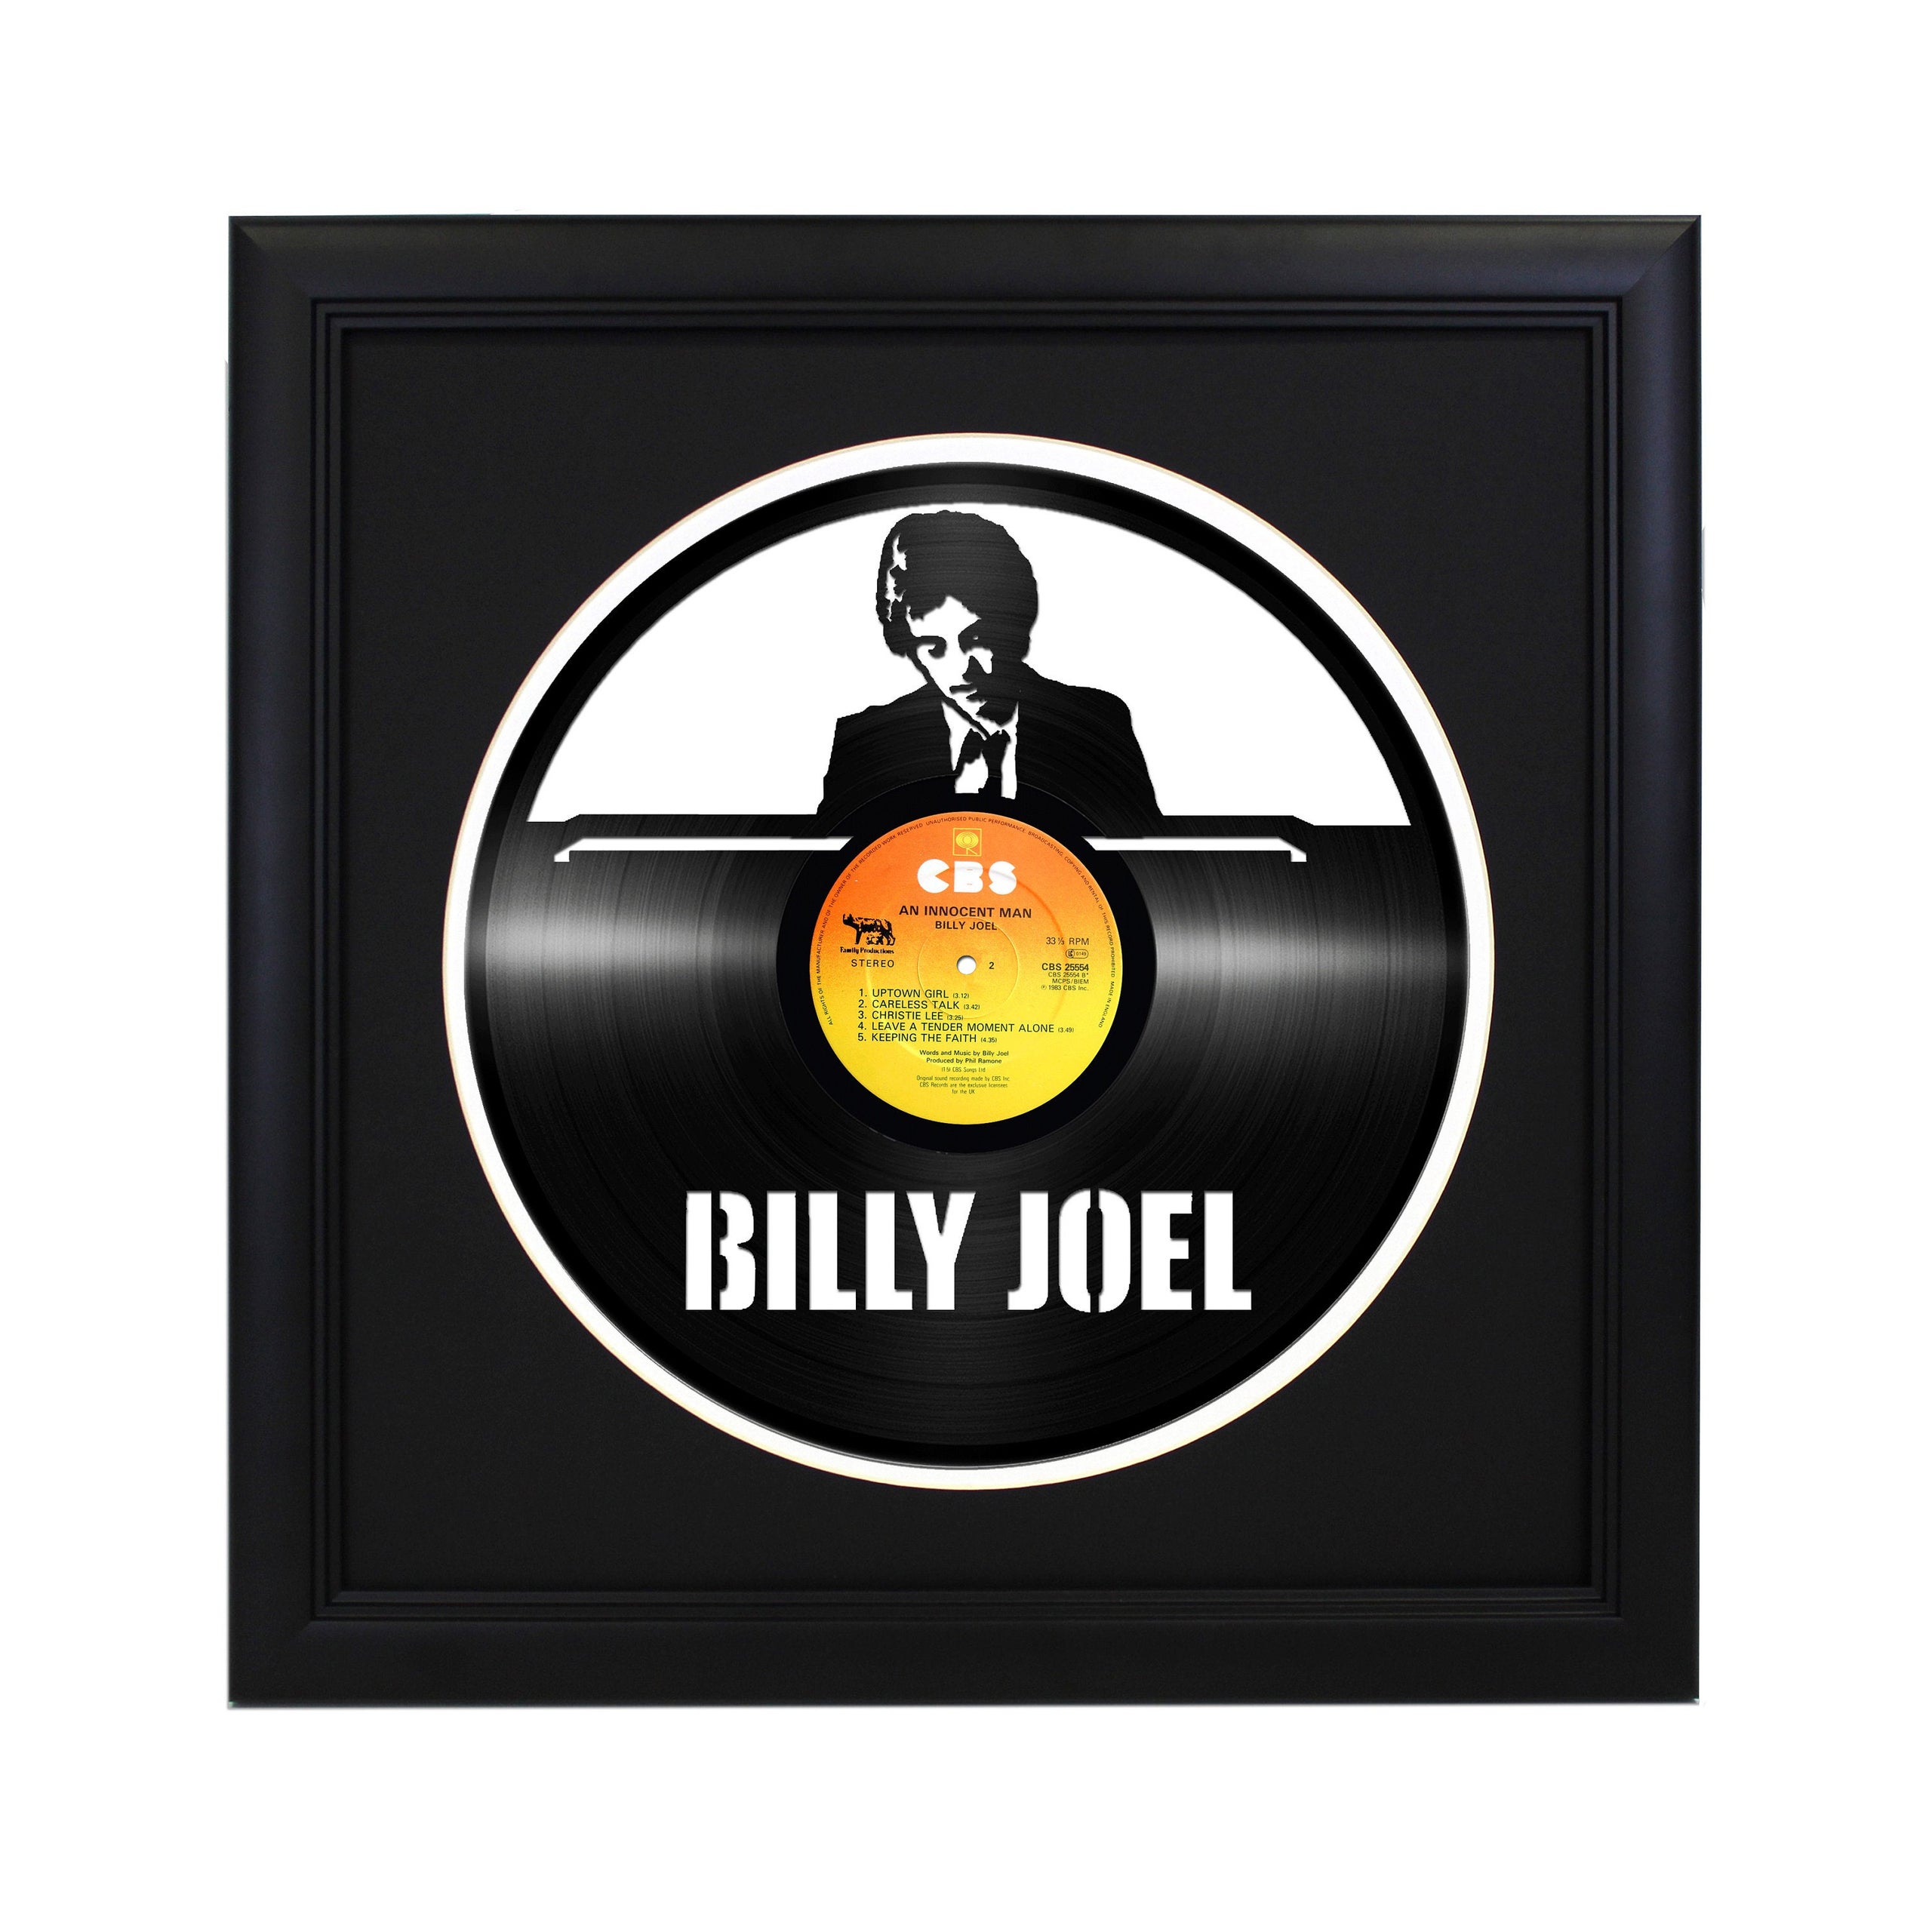 igennem absorption Nøjagtighed Framed & Ready To Hang Die Cut Vinyl Record - Billy Joel